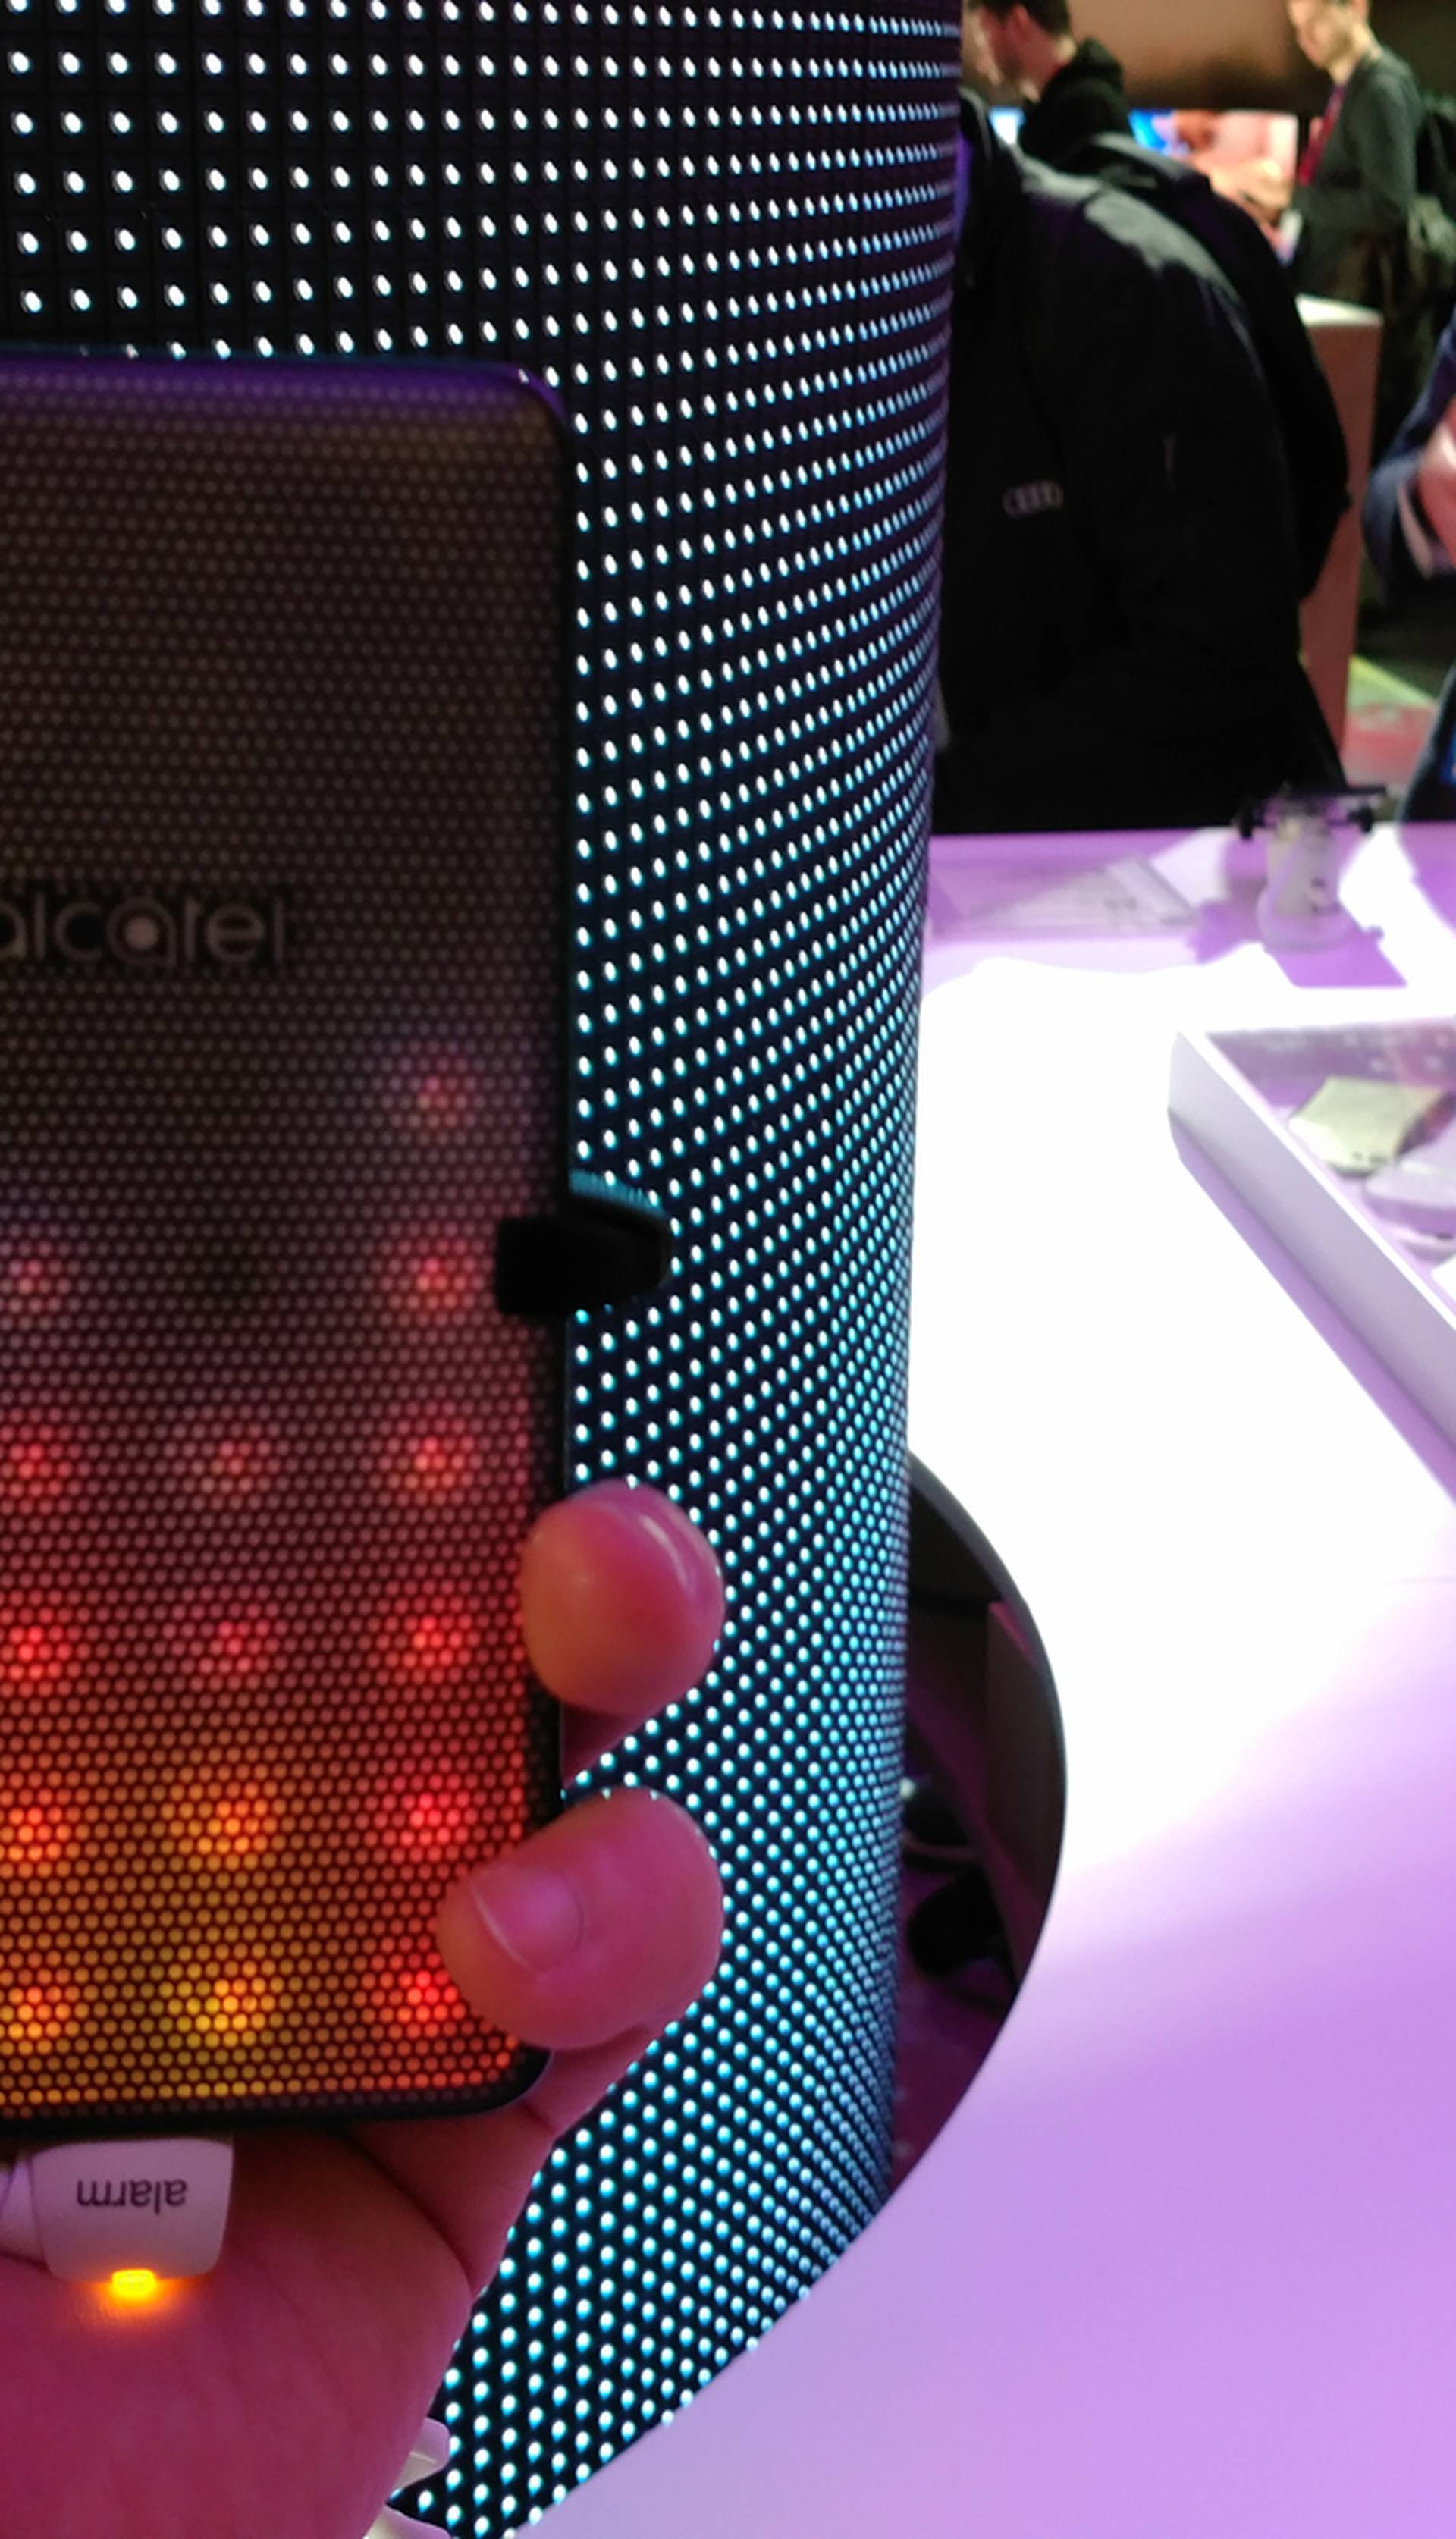 Disko telefon: Alcatel A5 LED u džep vam stavlja light-show